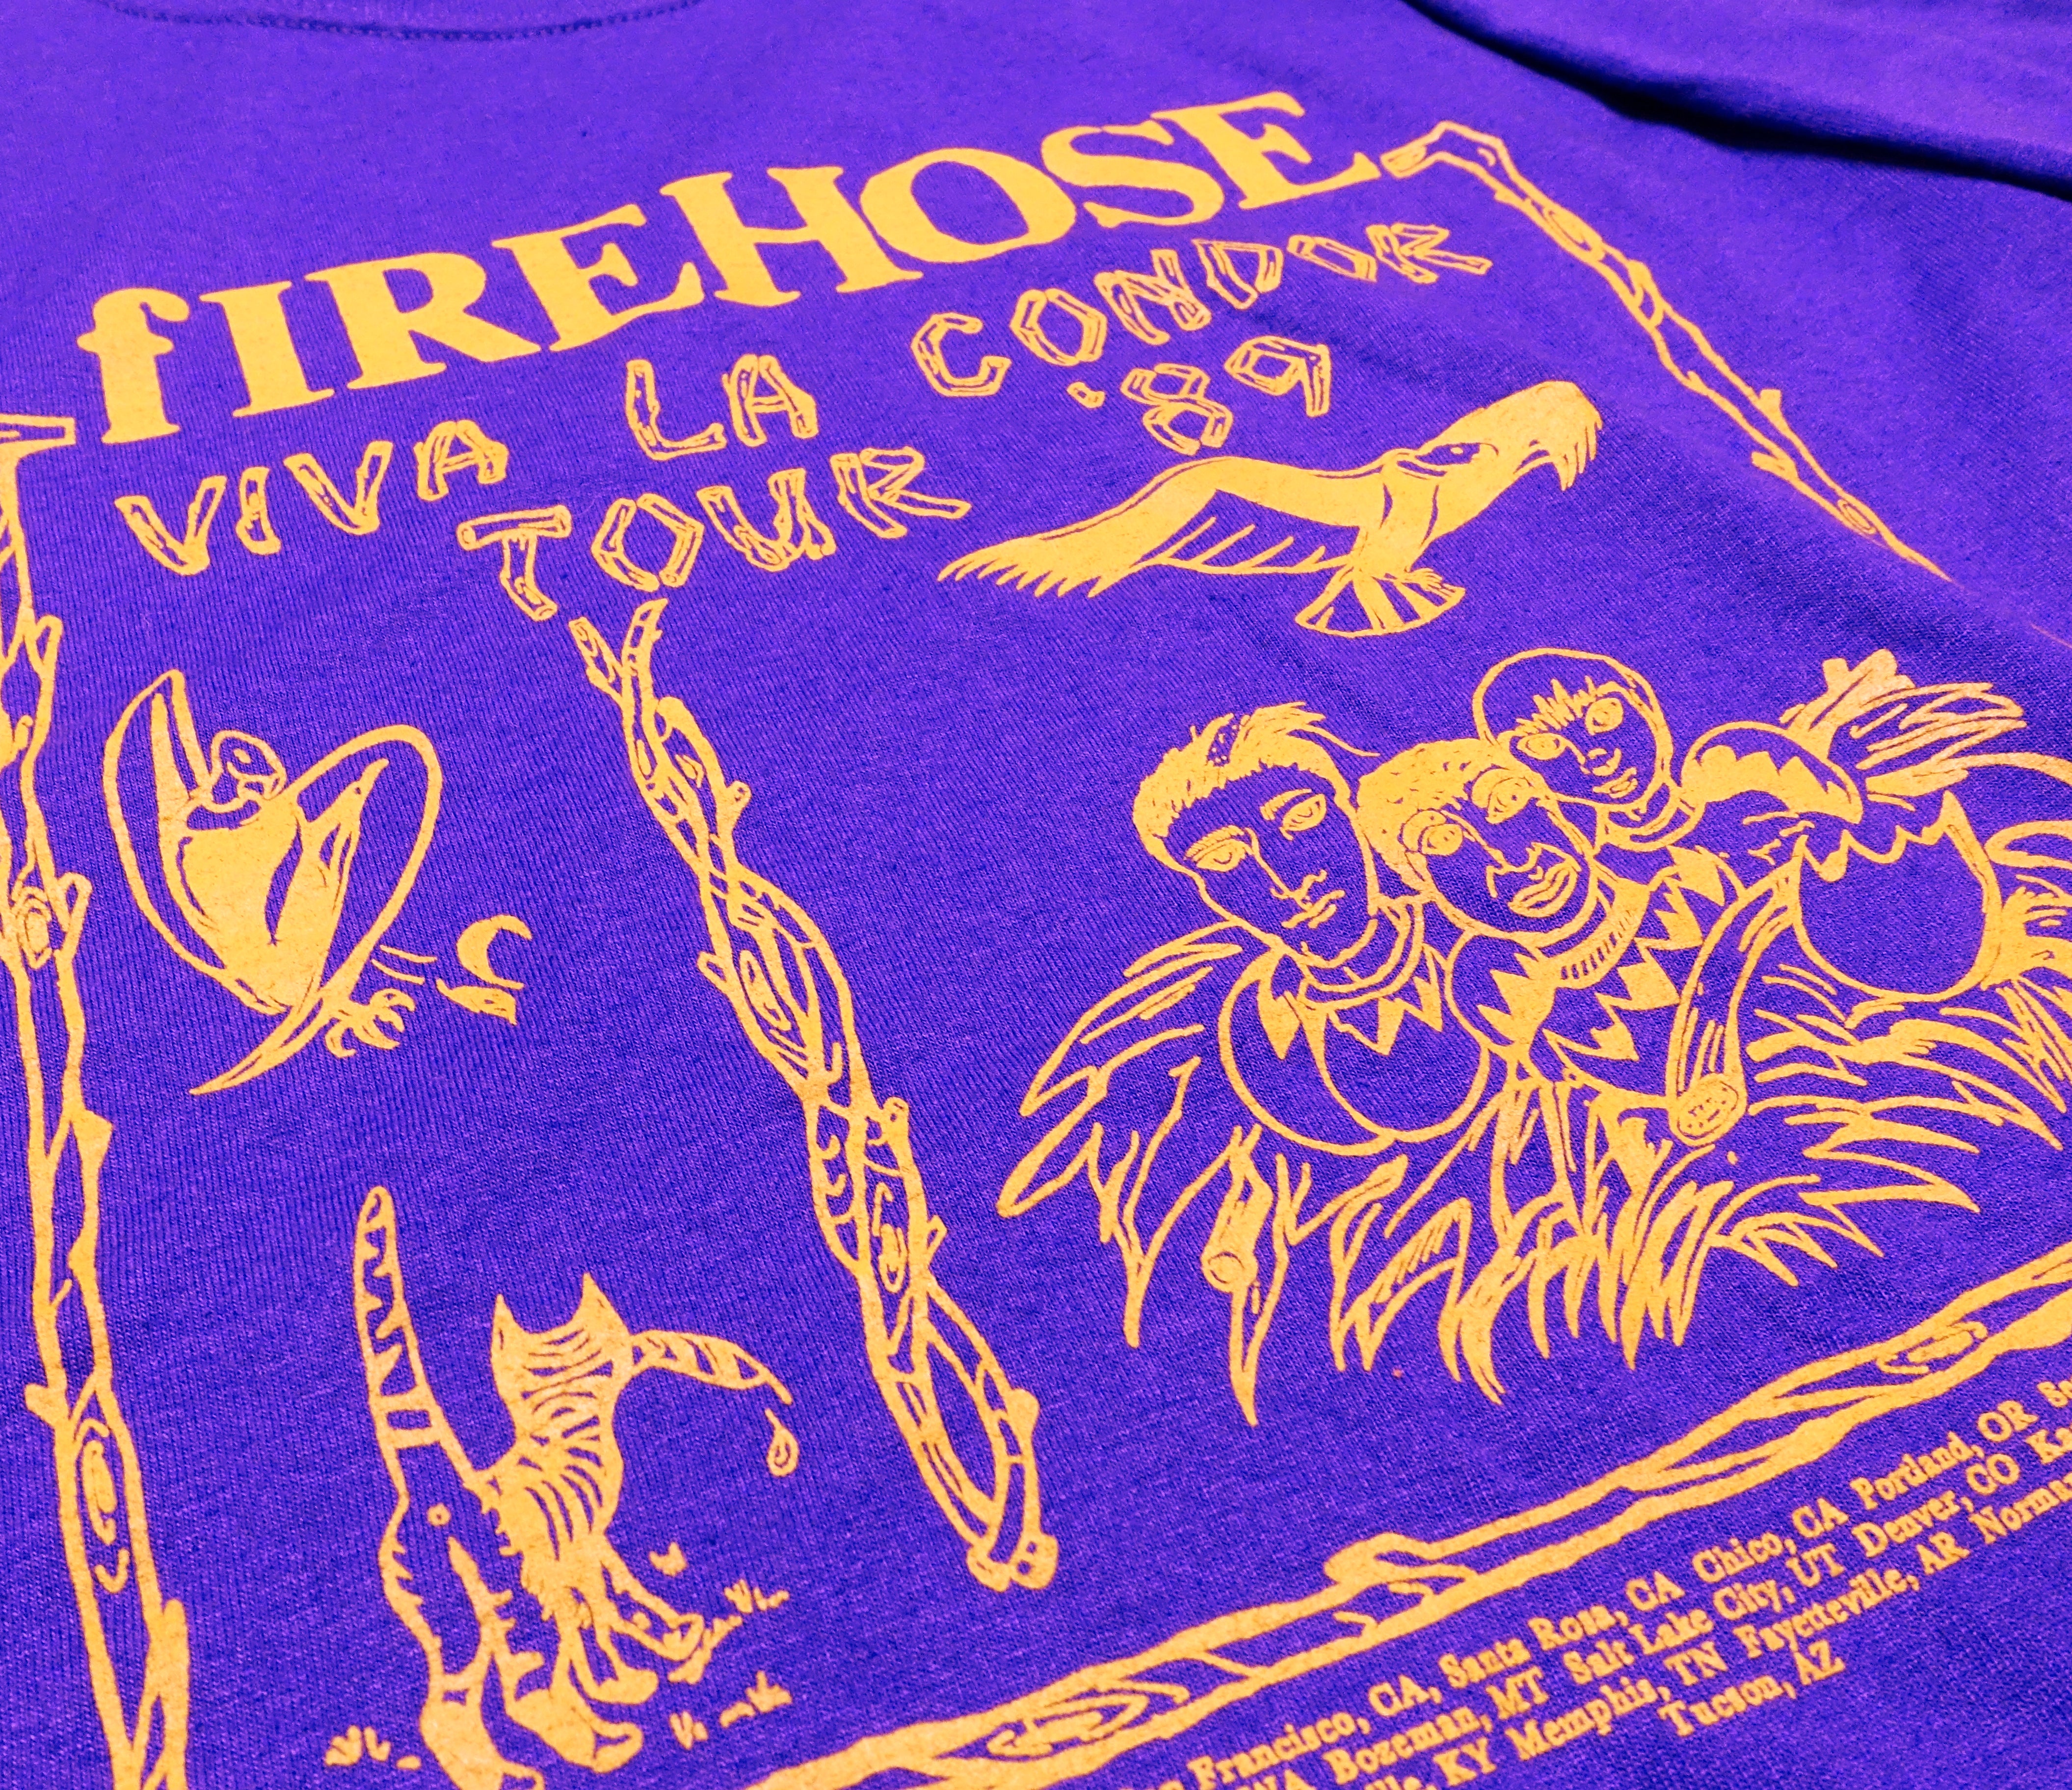 fIREHOSE - Viva La Condor Tour Shirt Size Large (Reproduction)